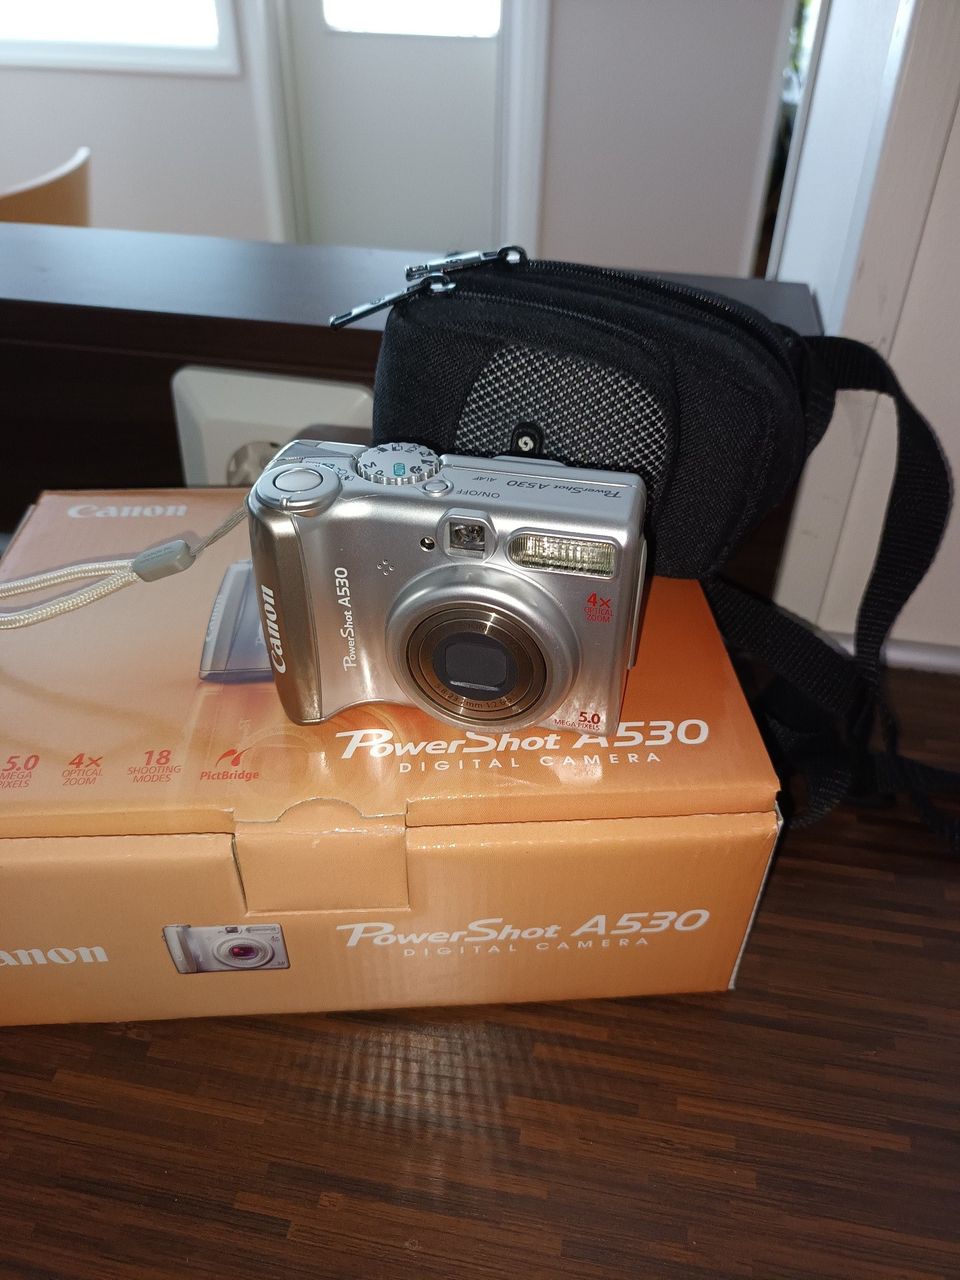 Canon Poweshot A530 digitaalikamera ja laukku